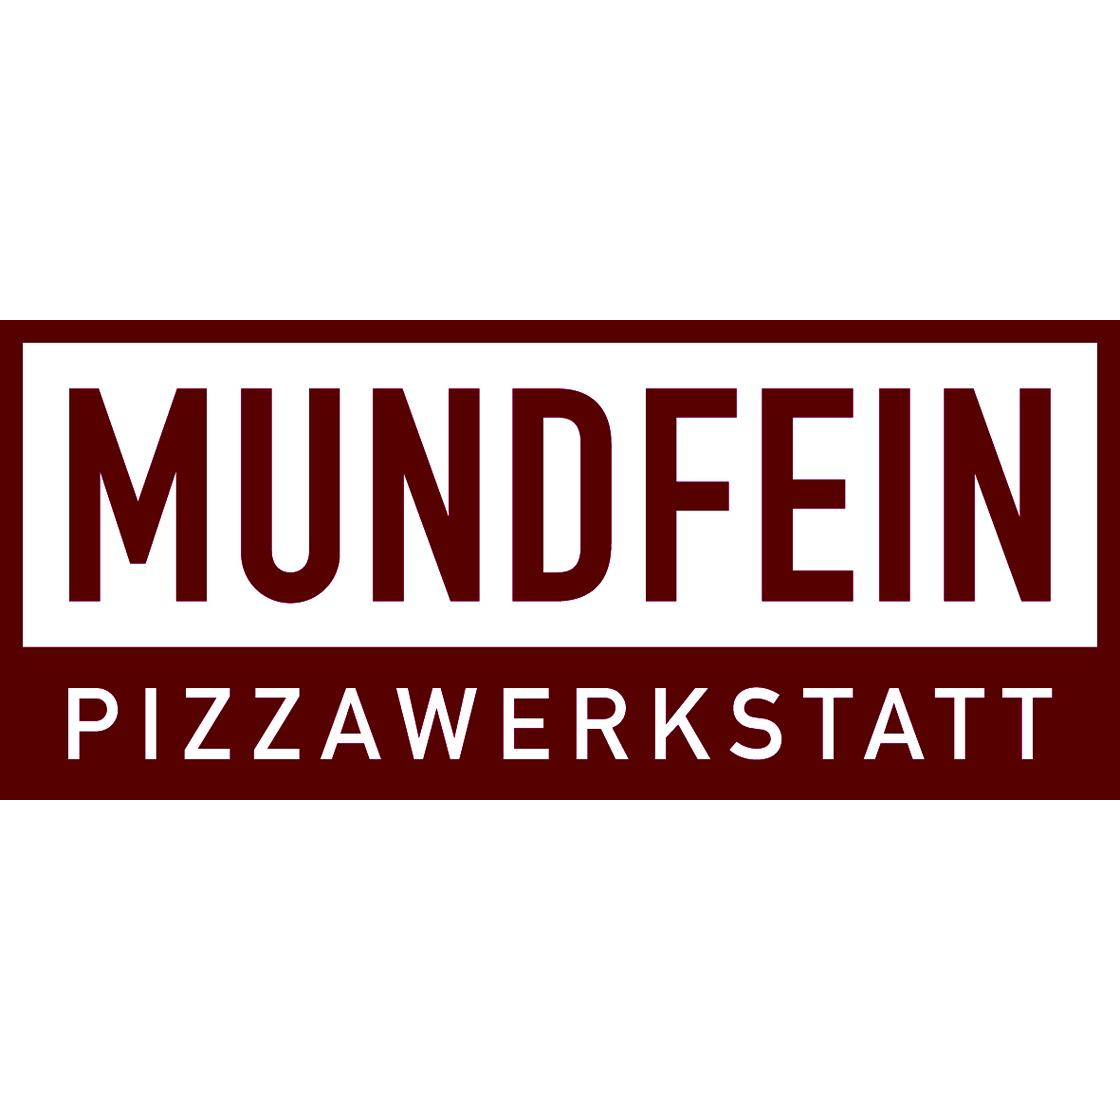 MUNDFEIN Pizzawerkstatt Hamburg-Hammerbrook